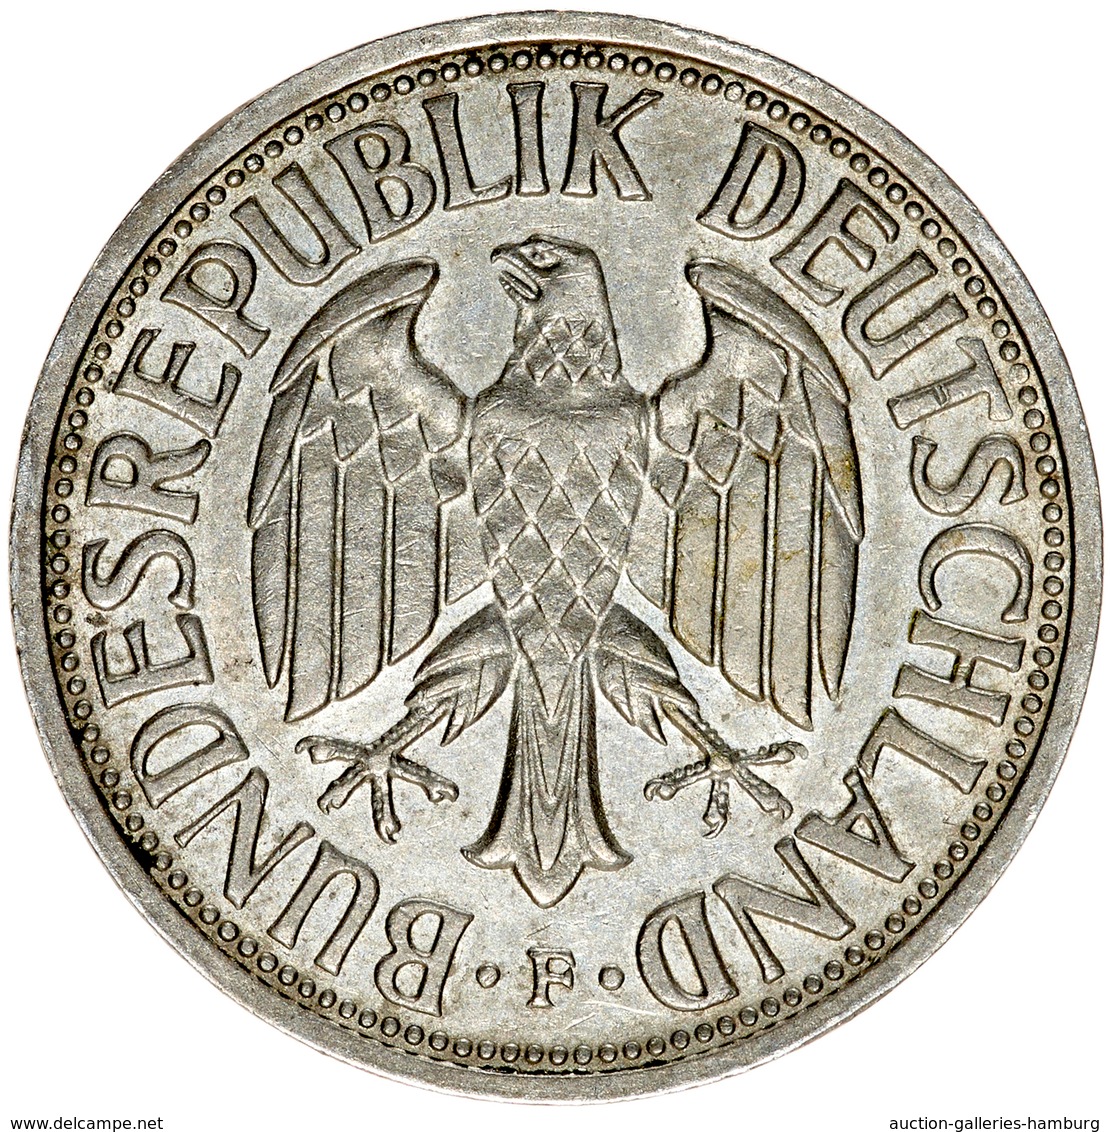 Bundesrepublik Deutschland 1948-2001: 1951, 2 Mark Kursmünze, jeweils aus den Prägestätten D, F, G u